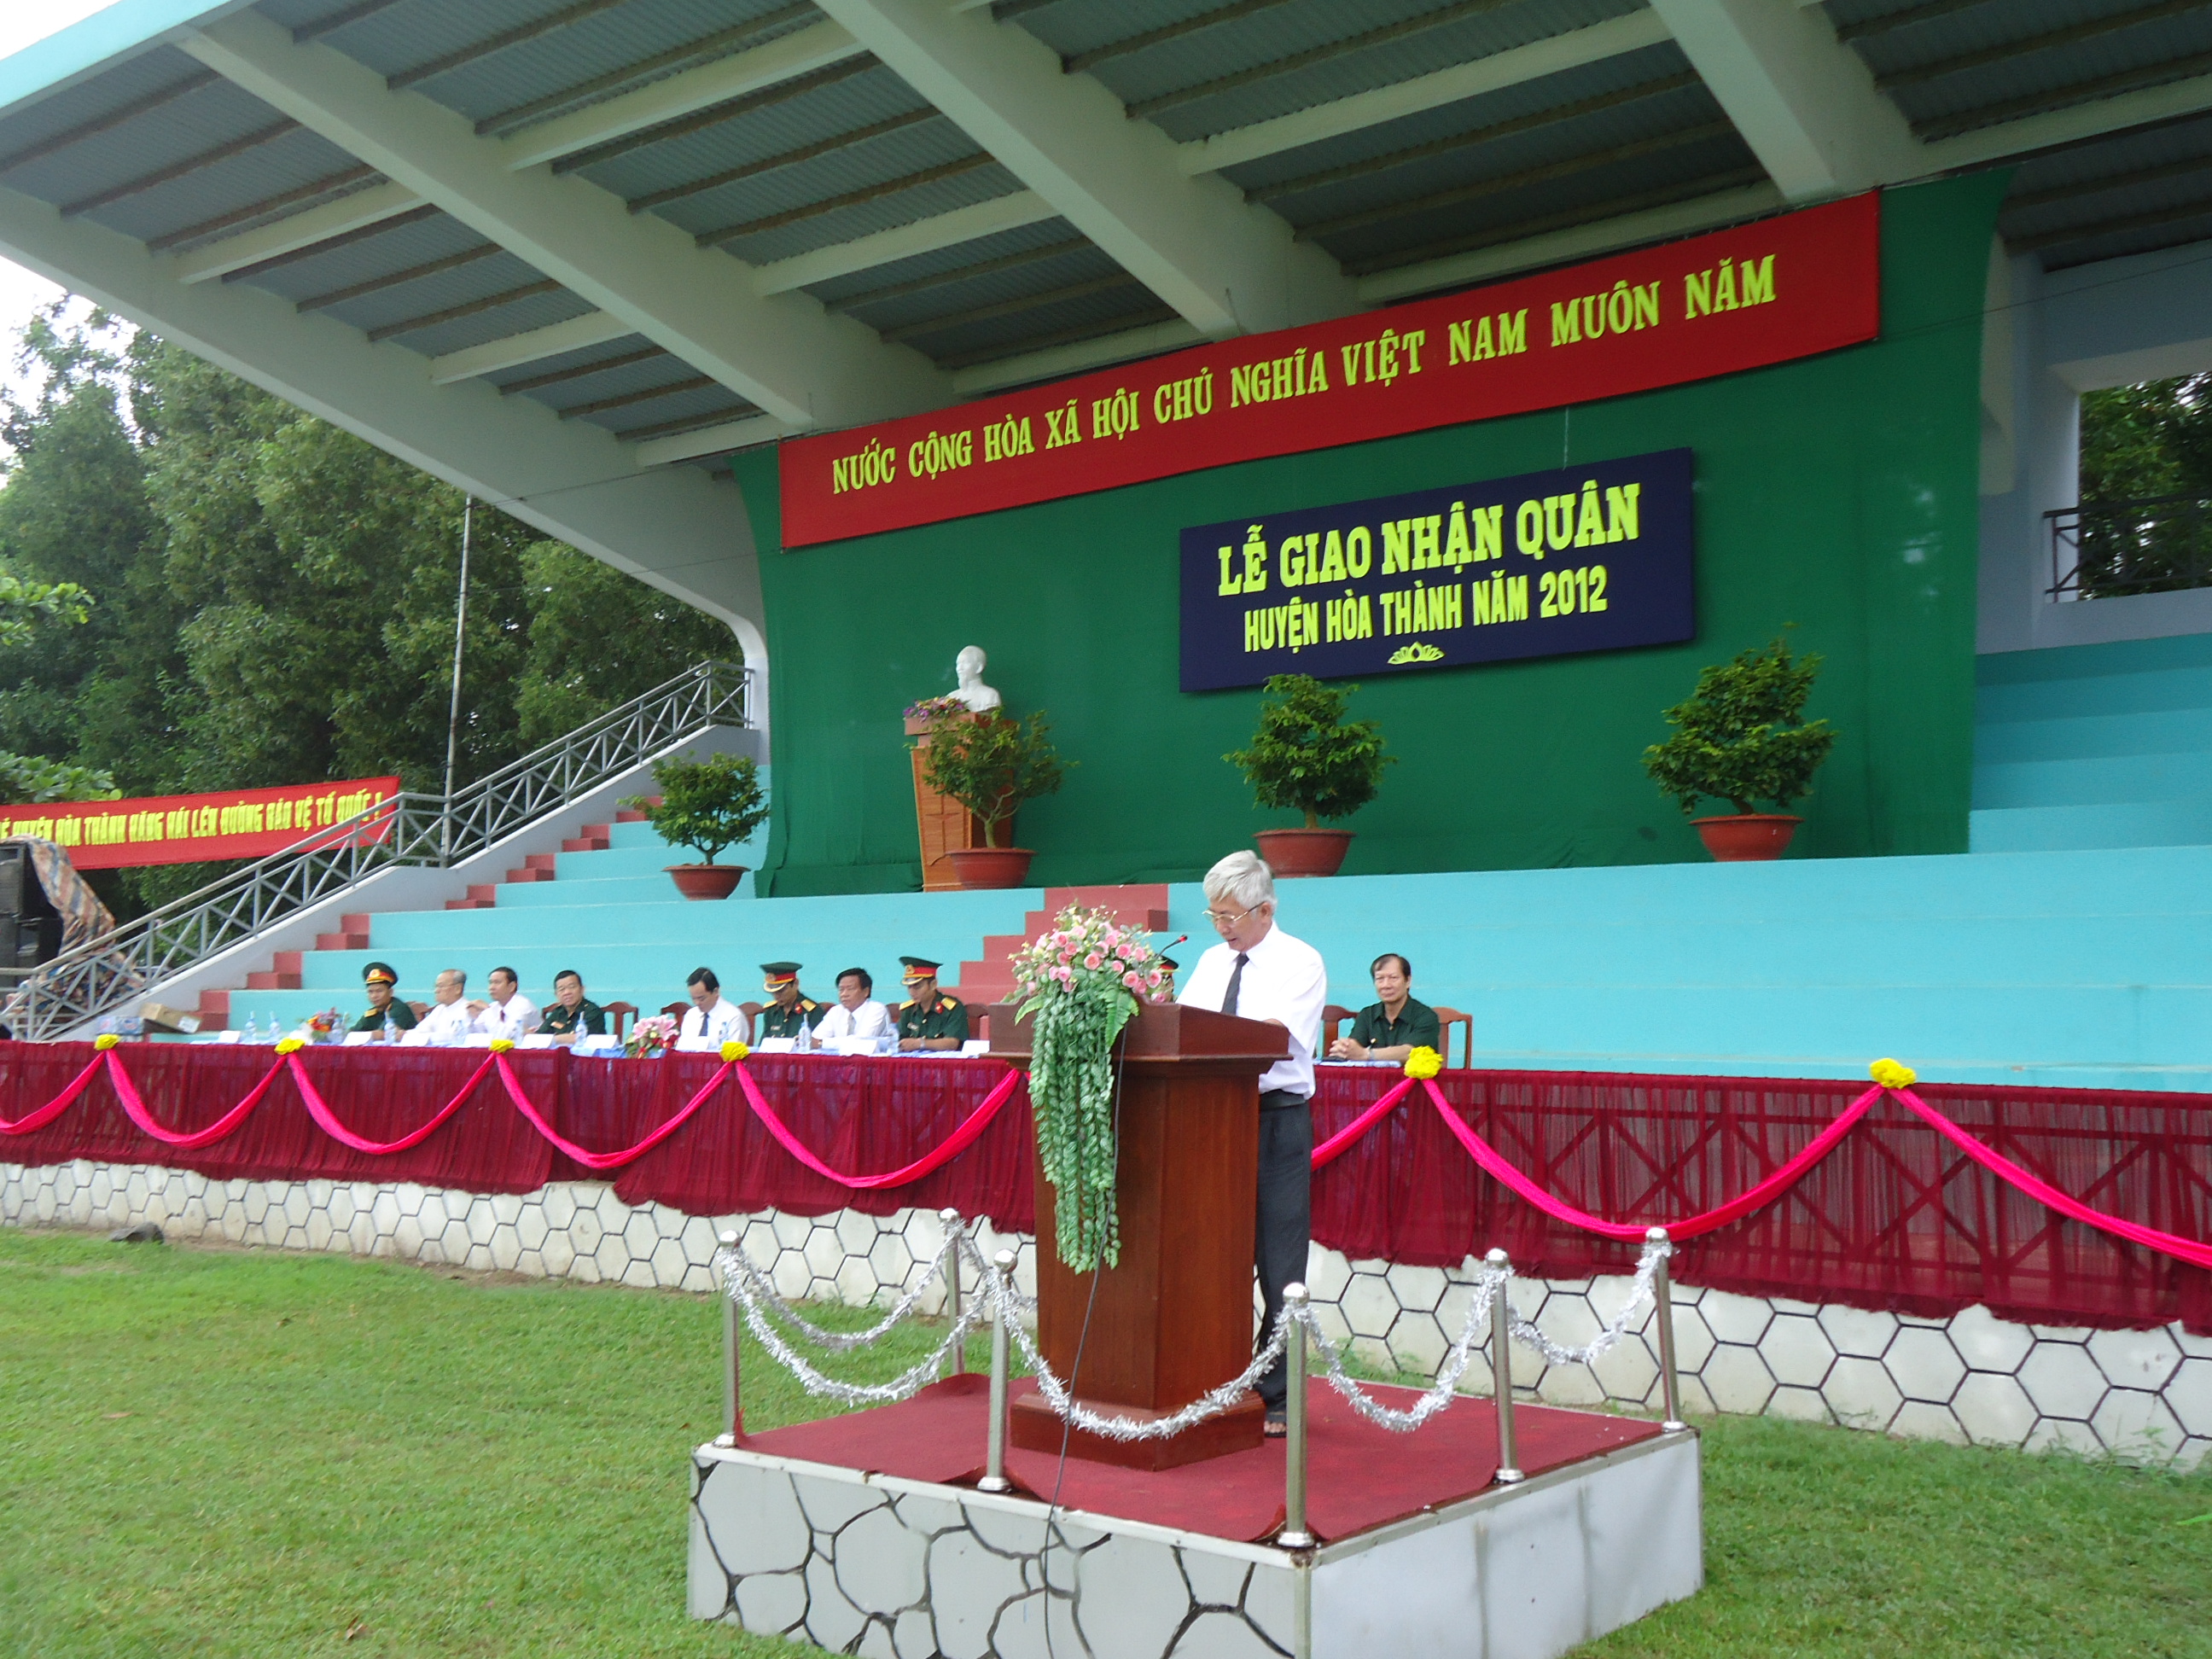 Chủ tịch UBND huyện -Nguyễn Văn Lỹ phát biểu tại Lễ giao nhận quân năm 2012